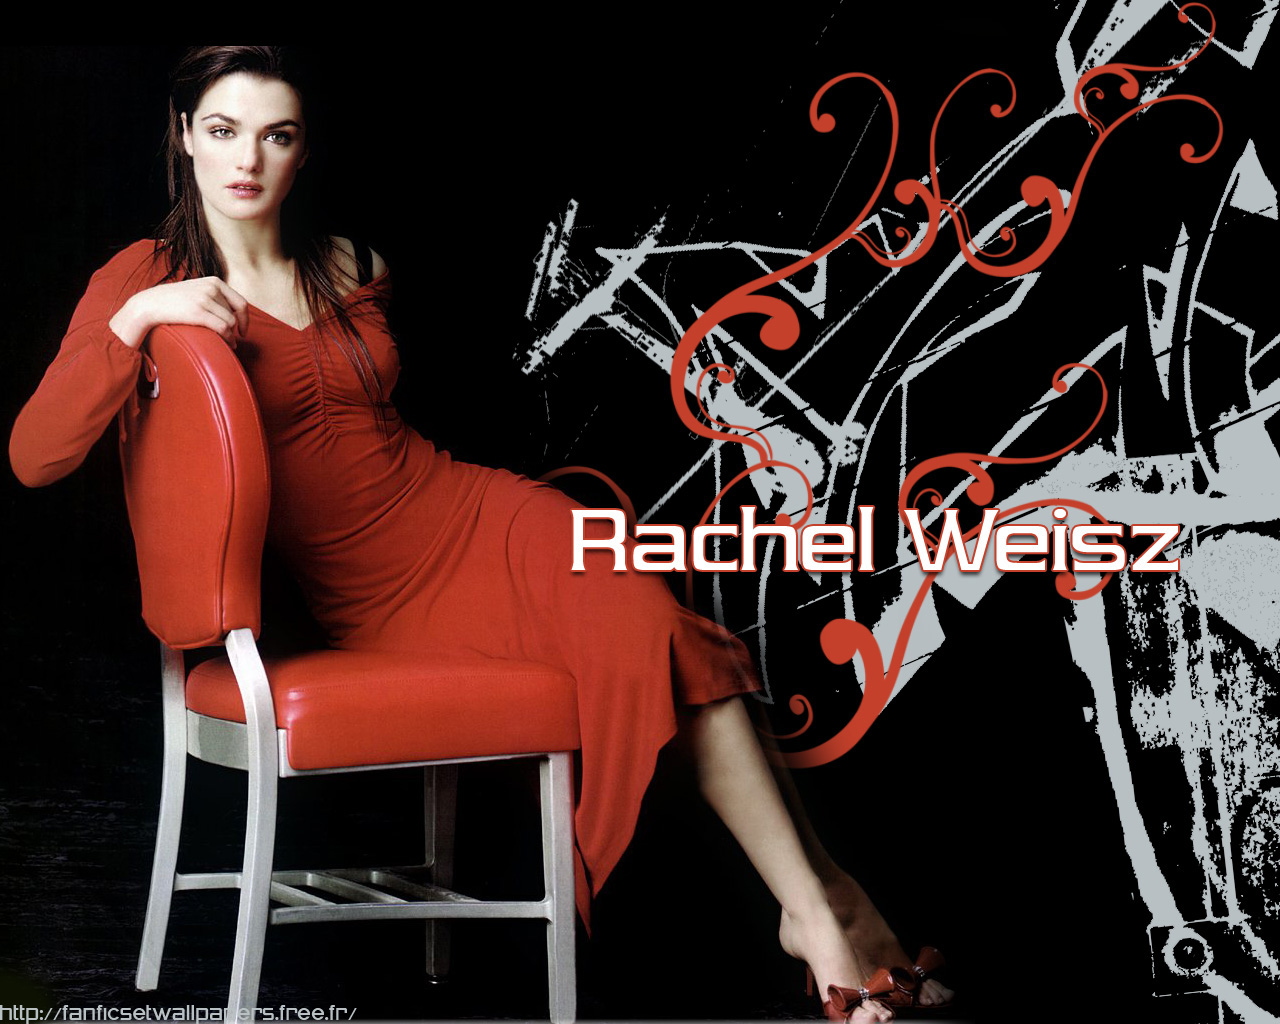 Rachel Weisz - Rachel Weisz Wallpaper (122053) - Fanpop